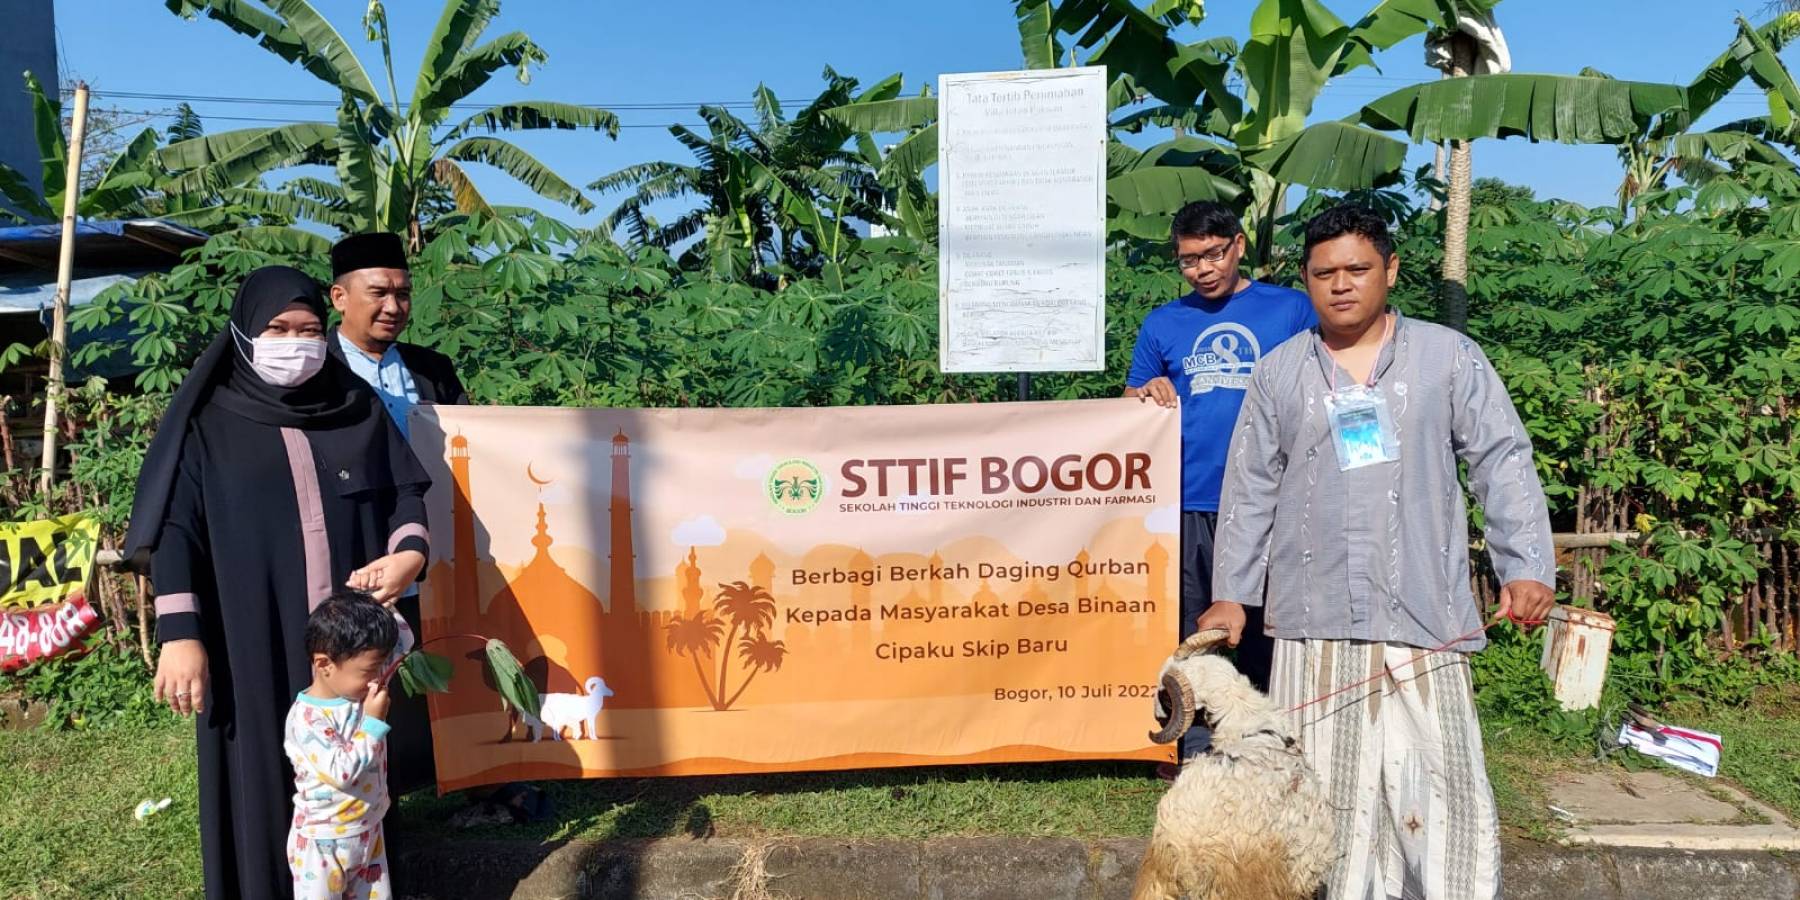 STTIF Bogor Berbagi daging Qurban Kepada Masyarakat Desa Binaan Cipaku Skip Baru 